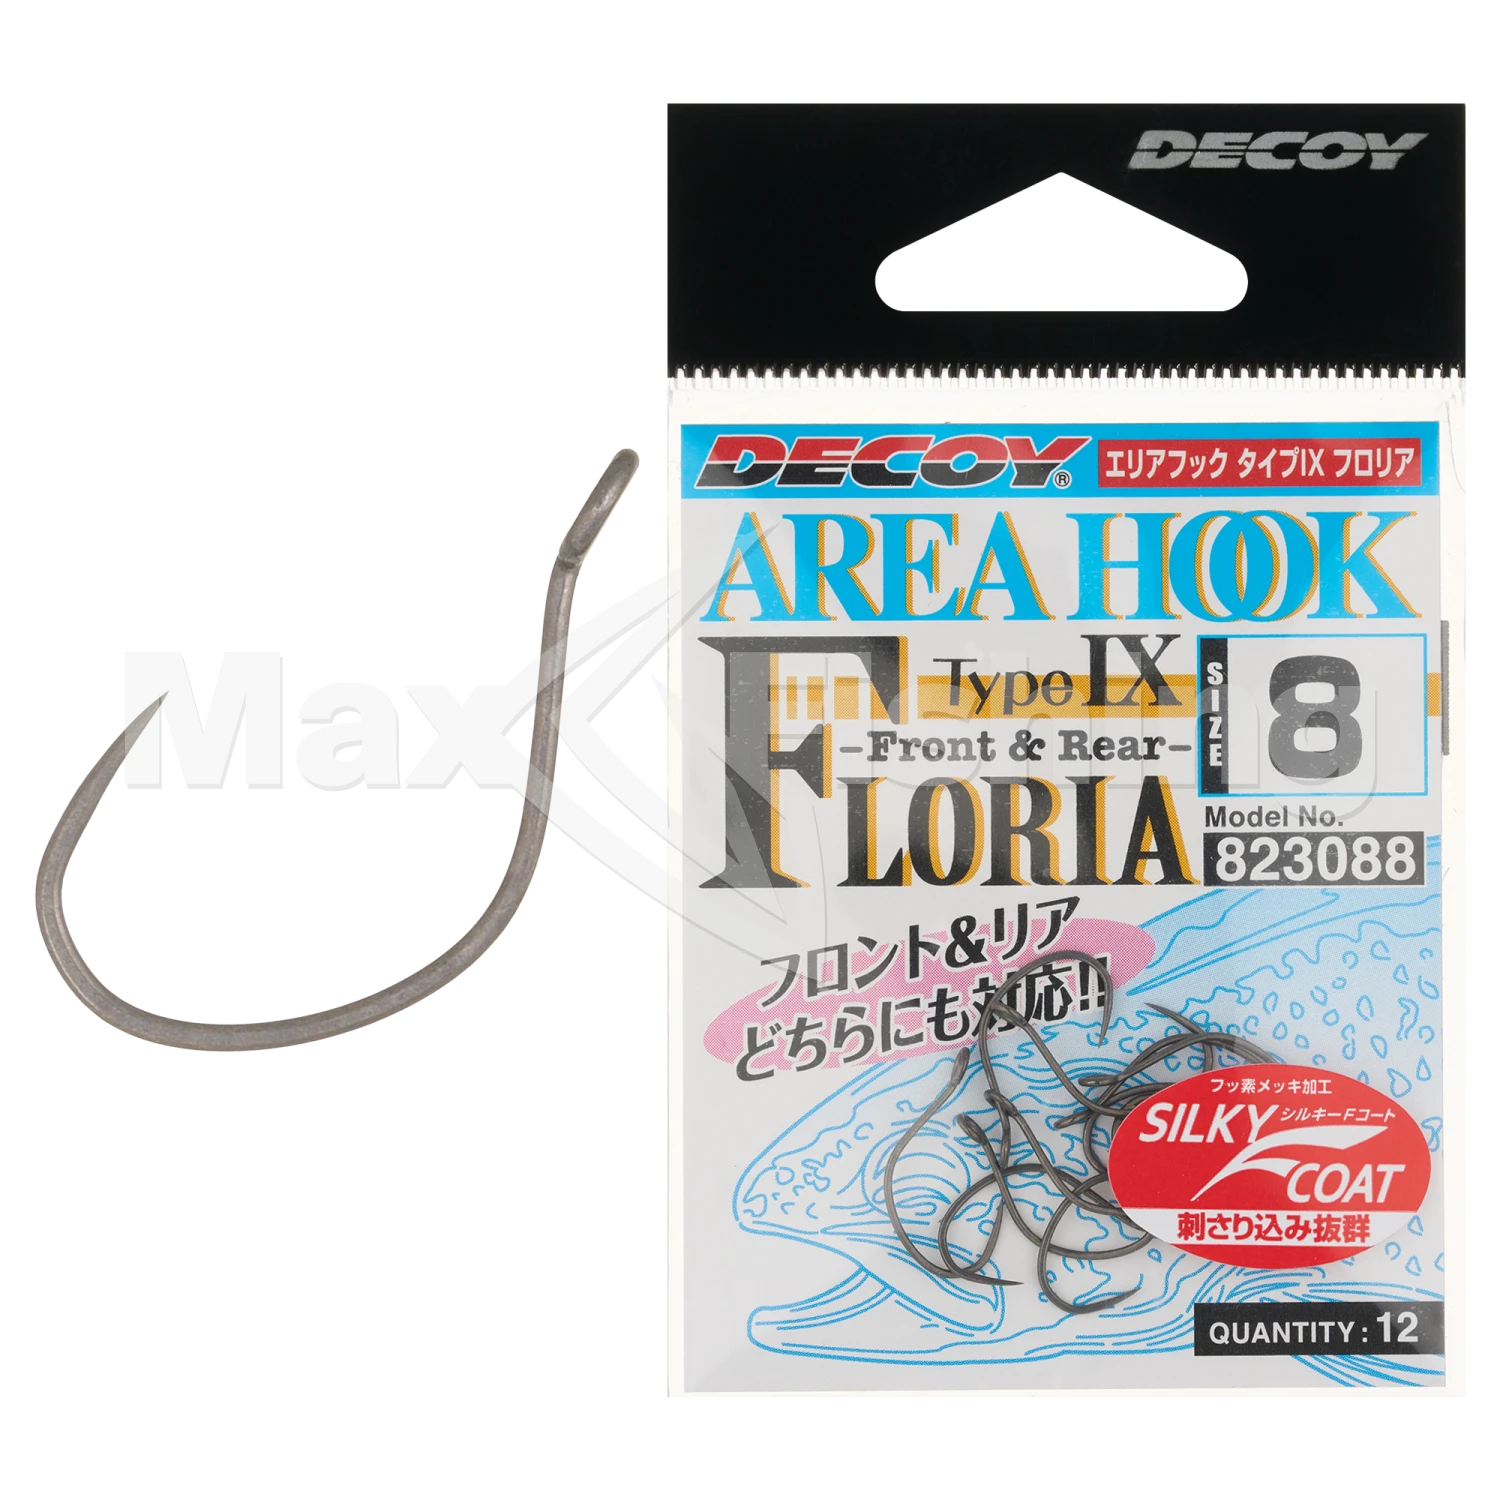 Крючок одинарный Decoy AH-9 Area Hook Floria #8 (12шт)